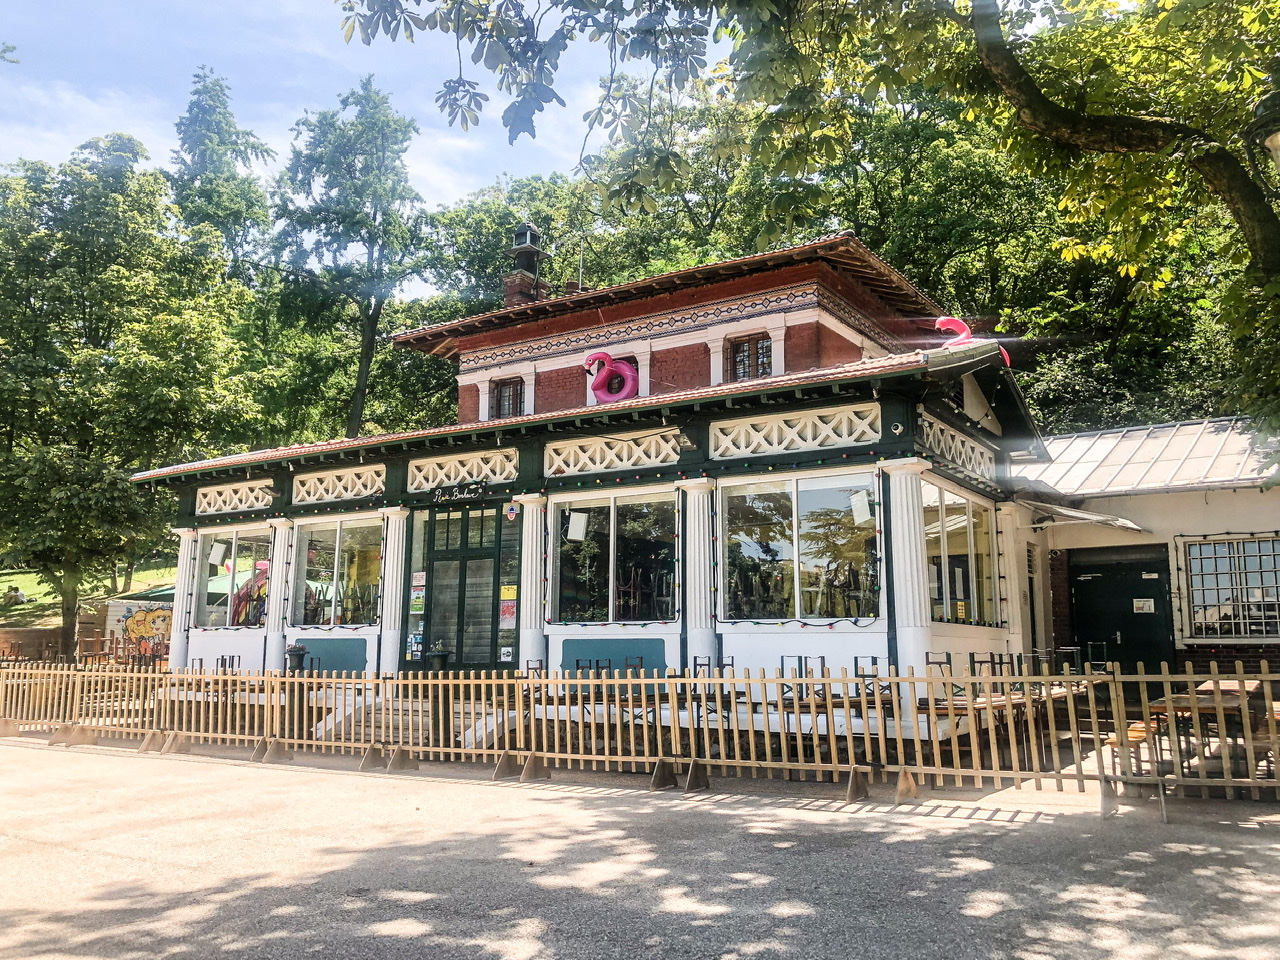 Exterior of Rosa Bonheur cafe in Parc des Buttes-Chaumont